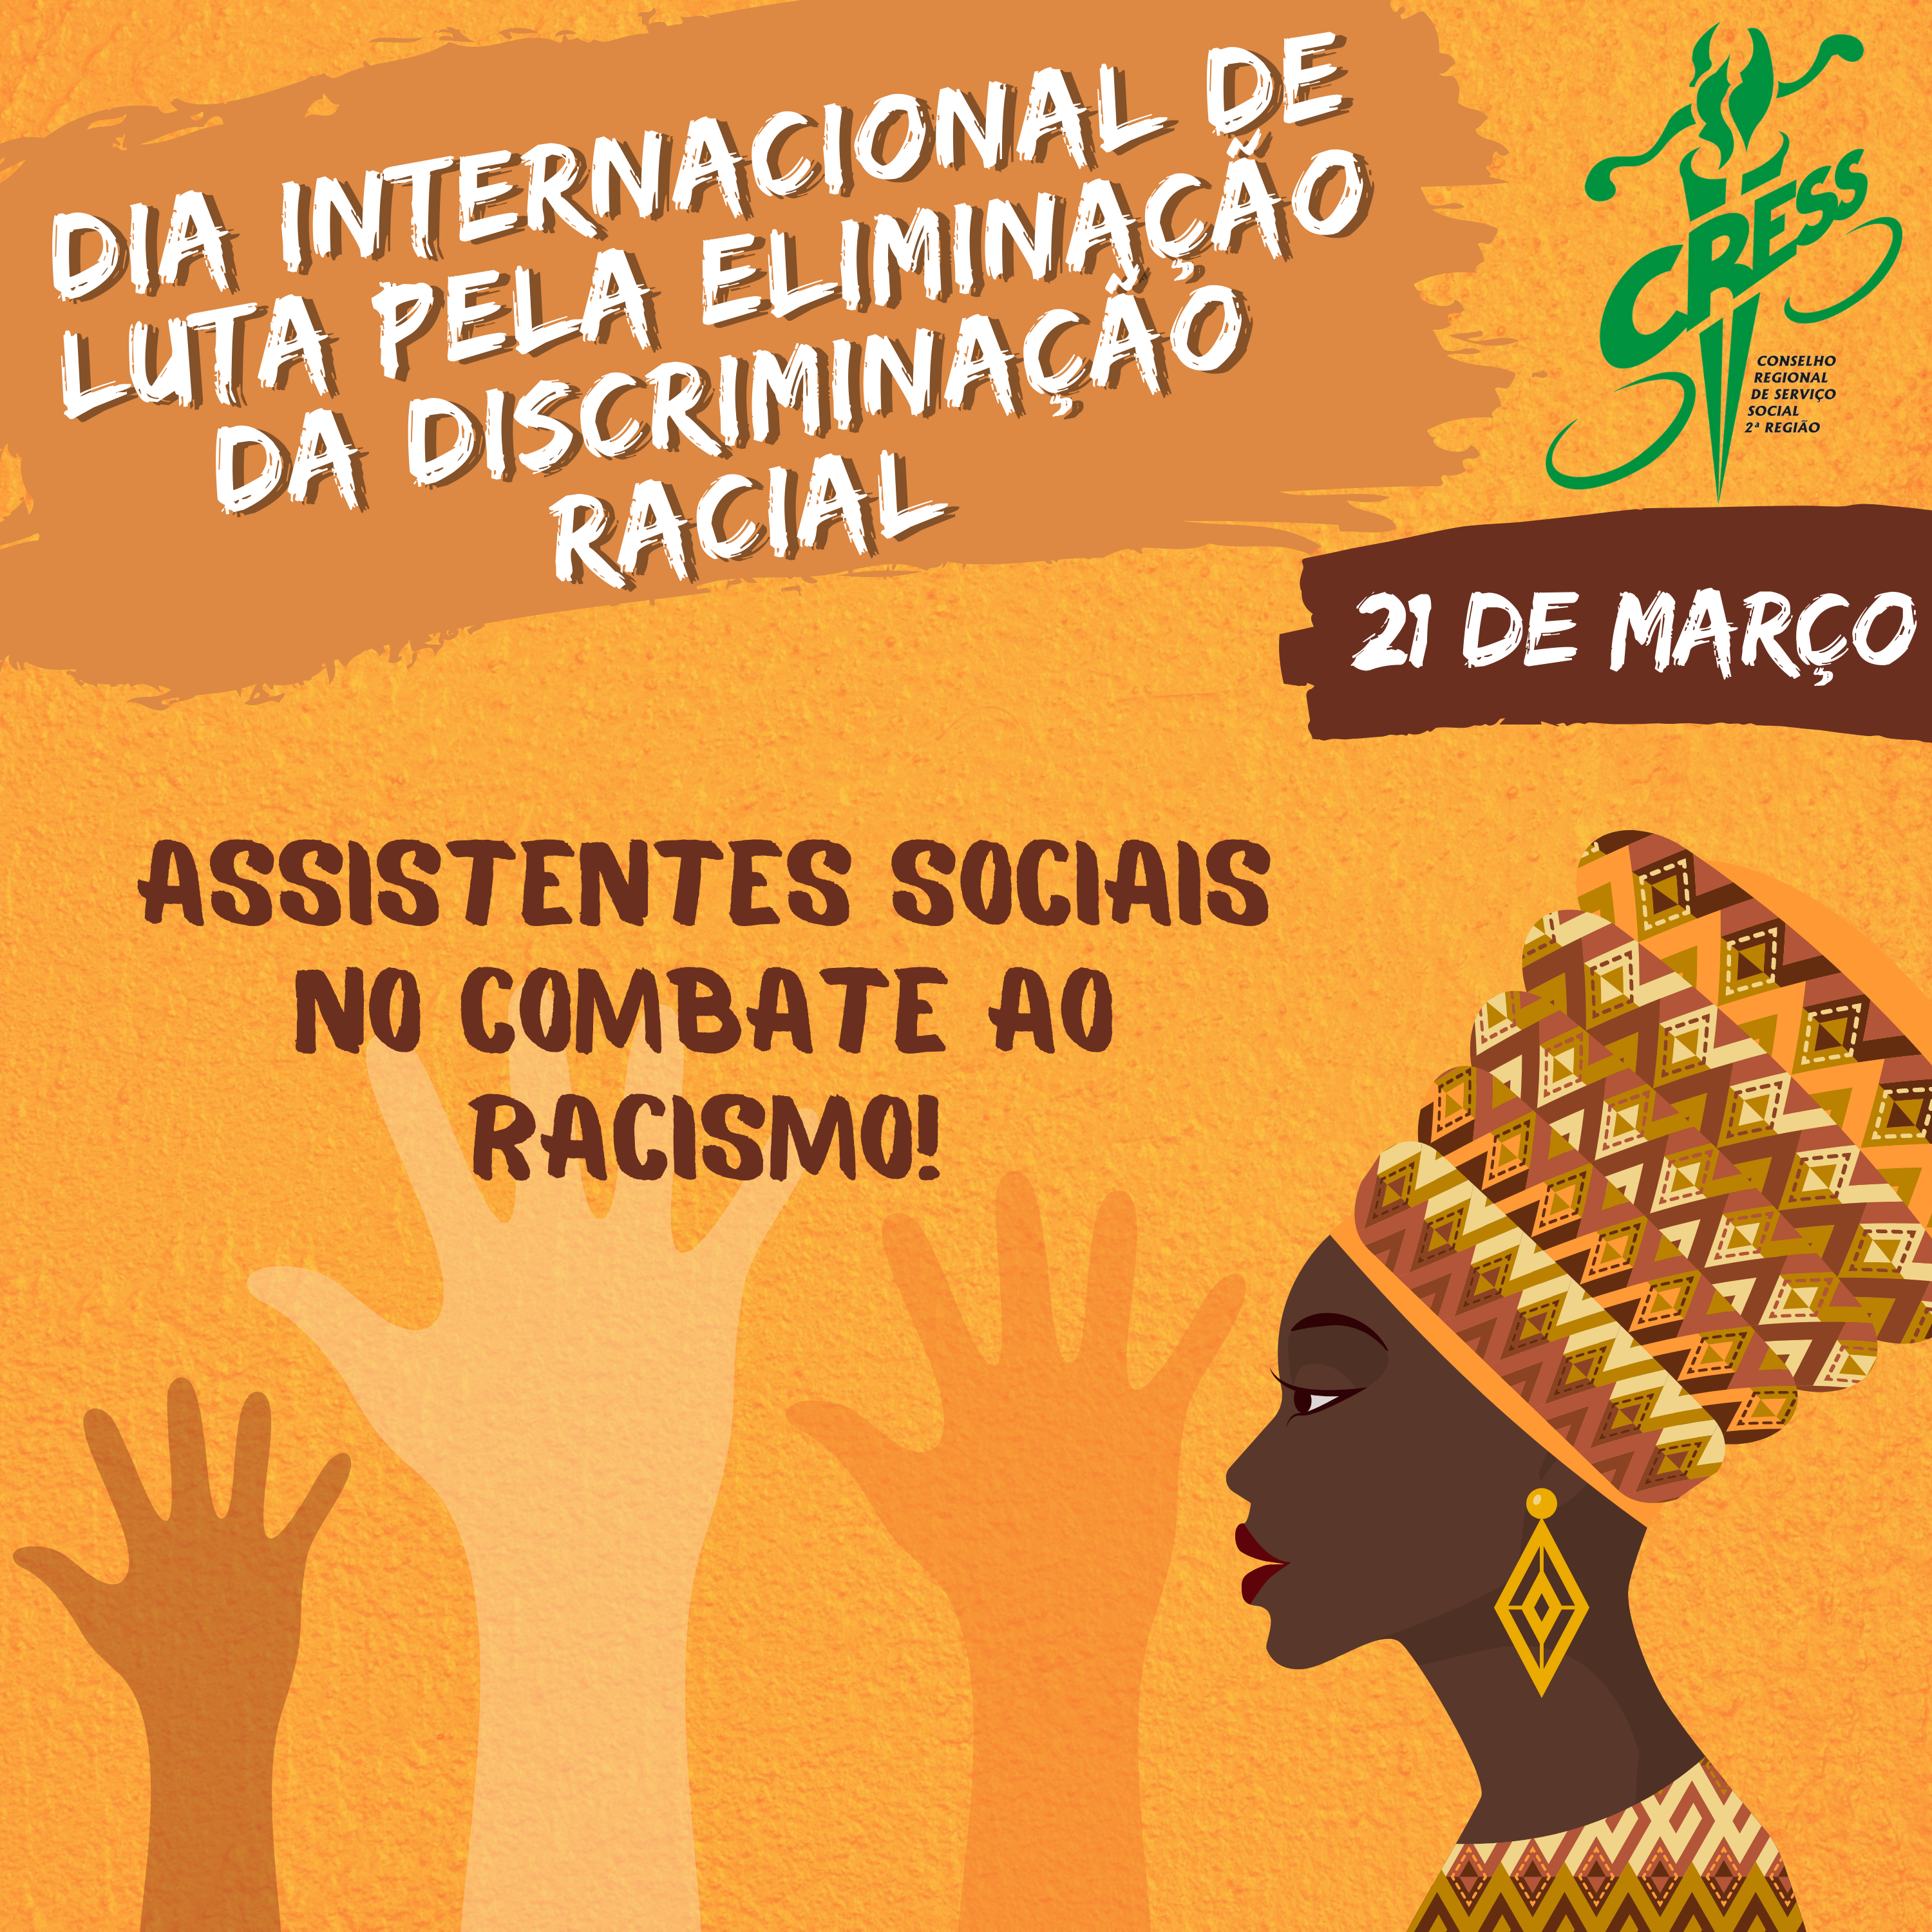 Dia Internacional de Luta pela Eliminação da Discriminação Racial (5)